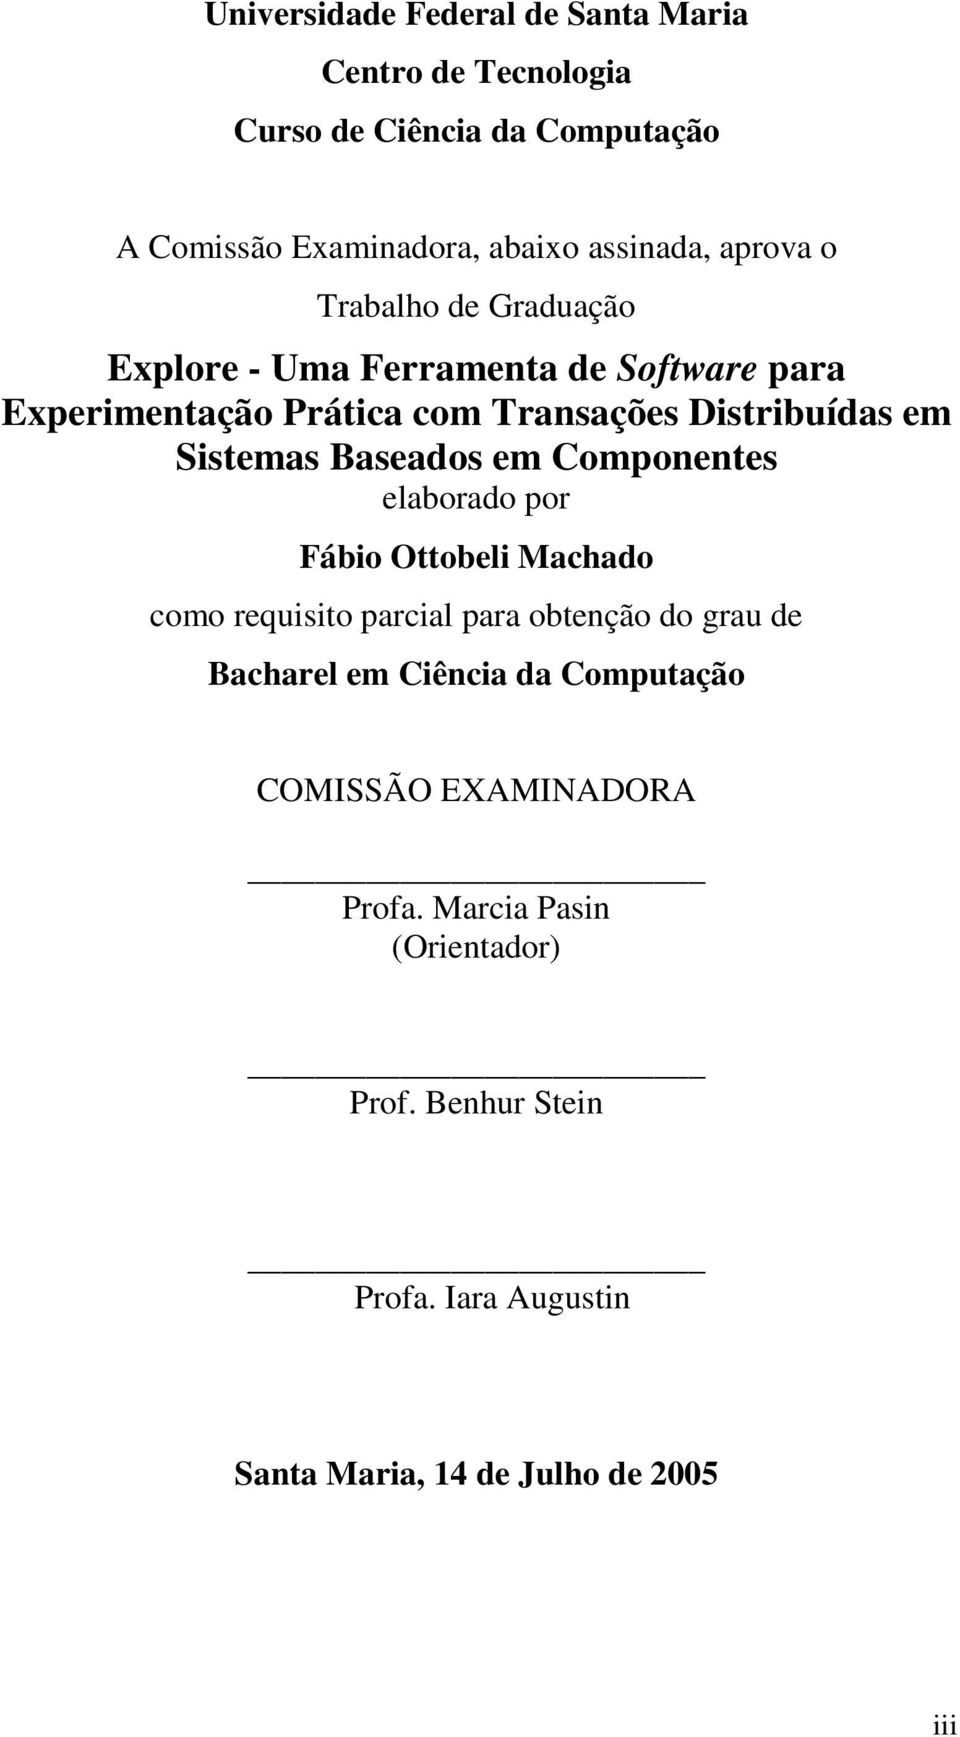 Sistemas Baseados em Componentes elaborado por Fábio Ottobeli Machado como requisito parcial para obtenção do grau de Bacharel em